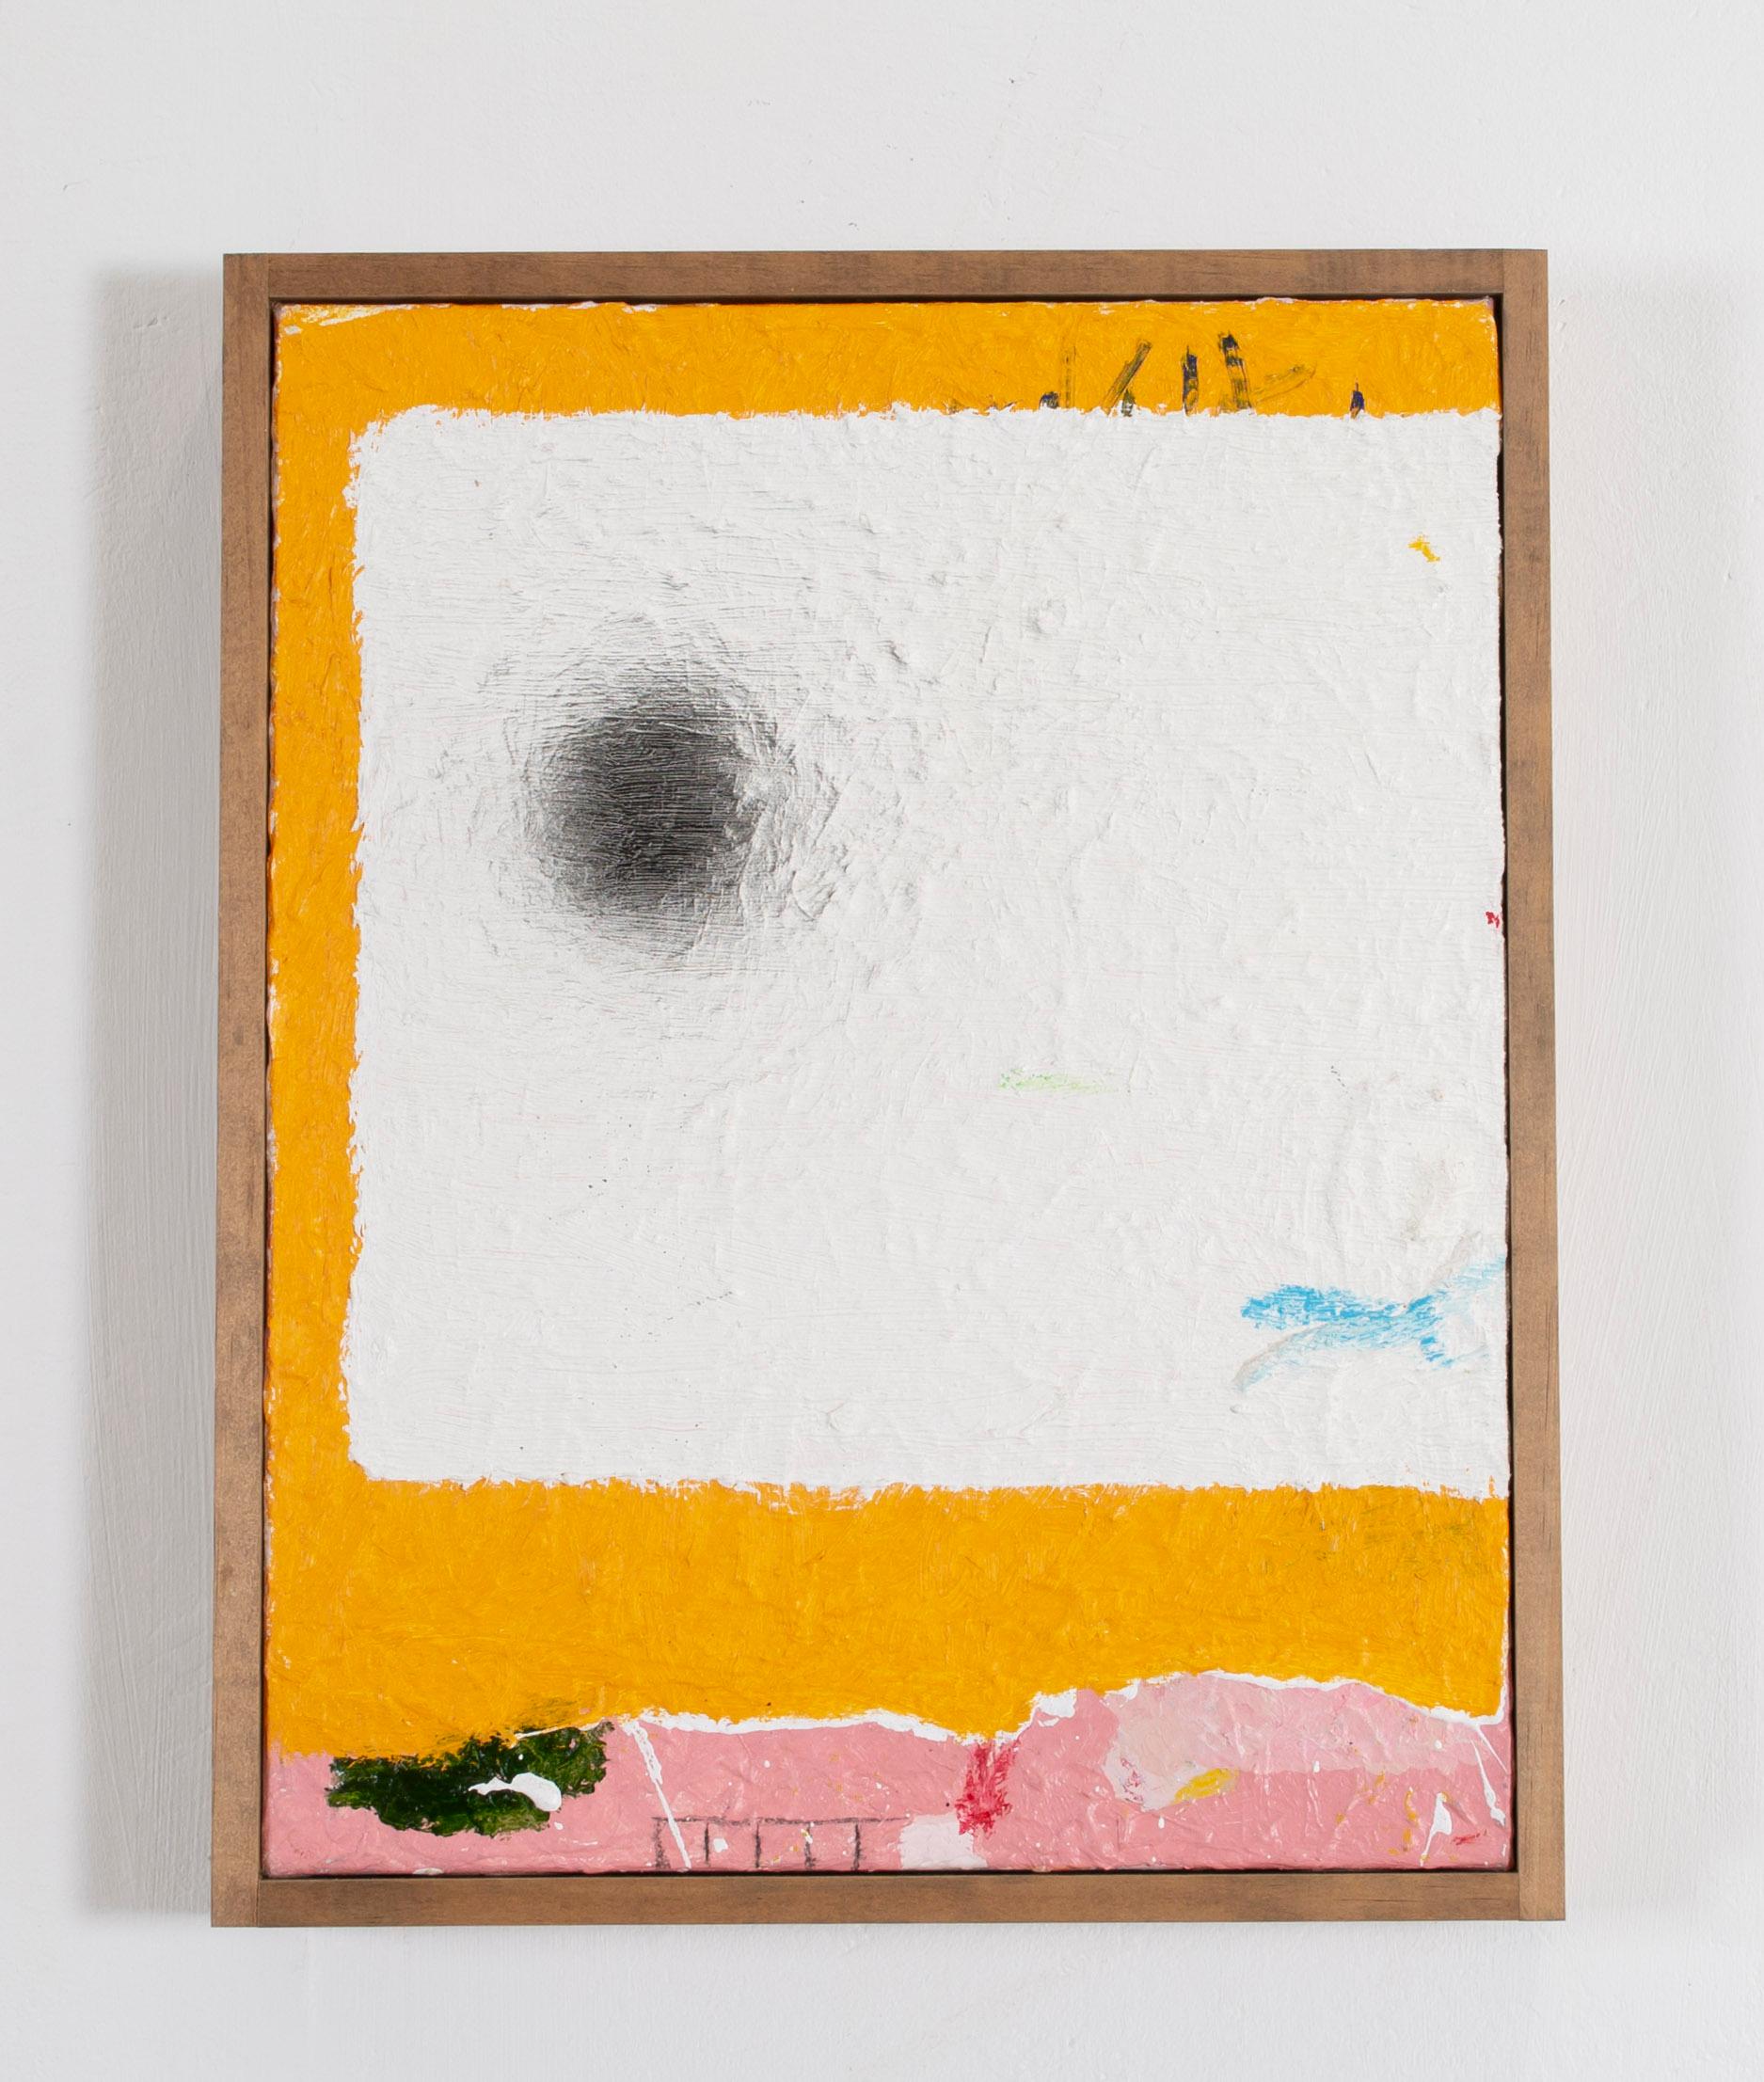 Michael Andrew Phillips Abstract Painting – "Schwarzer Schwan" Ölgemälde eines einsamen schwarzen Kreises auf einem mehrschichtigen Hintergrund  